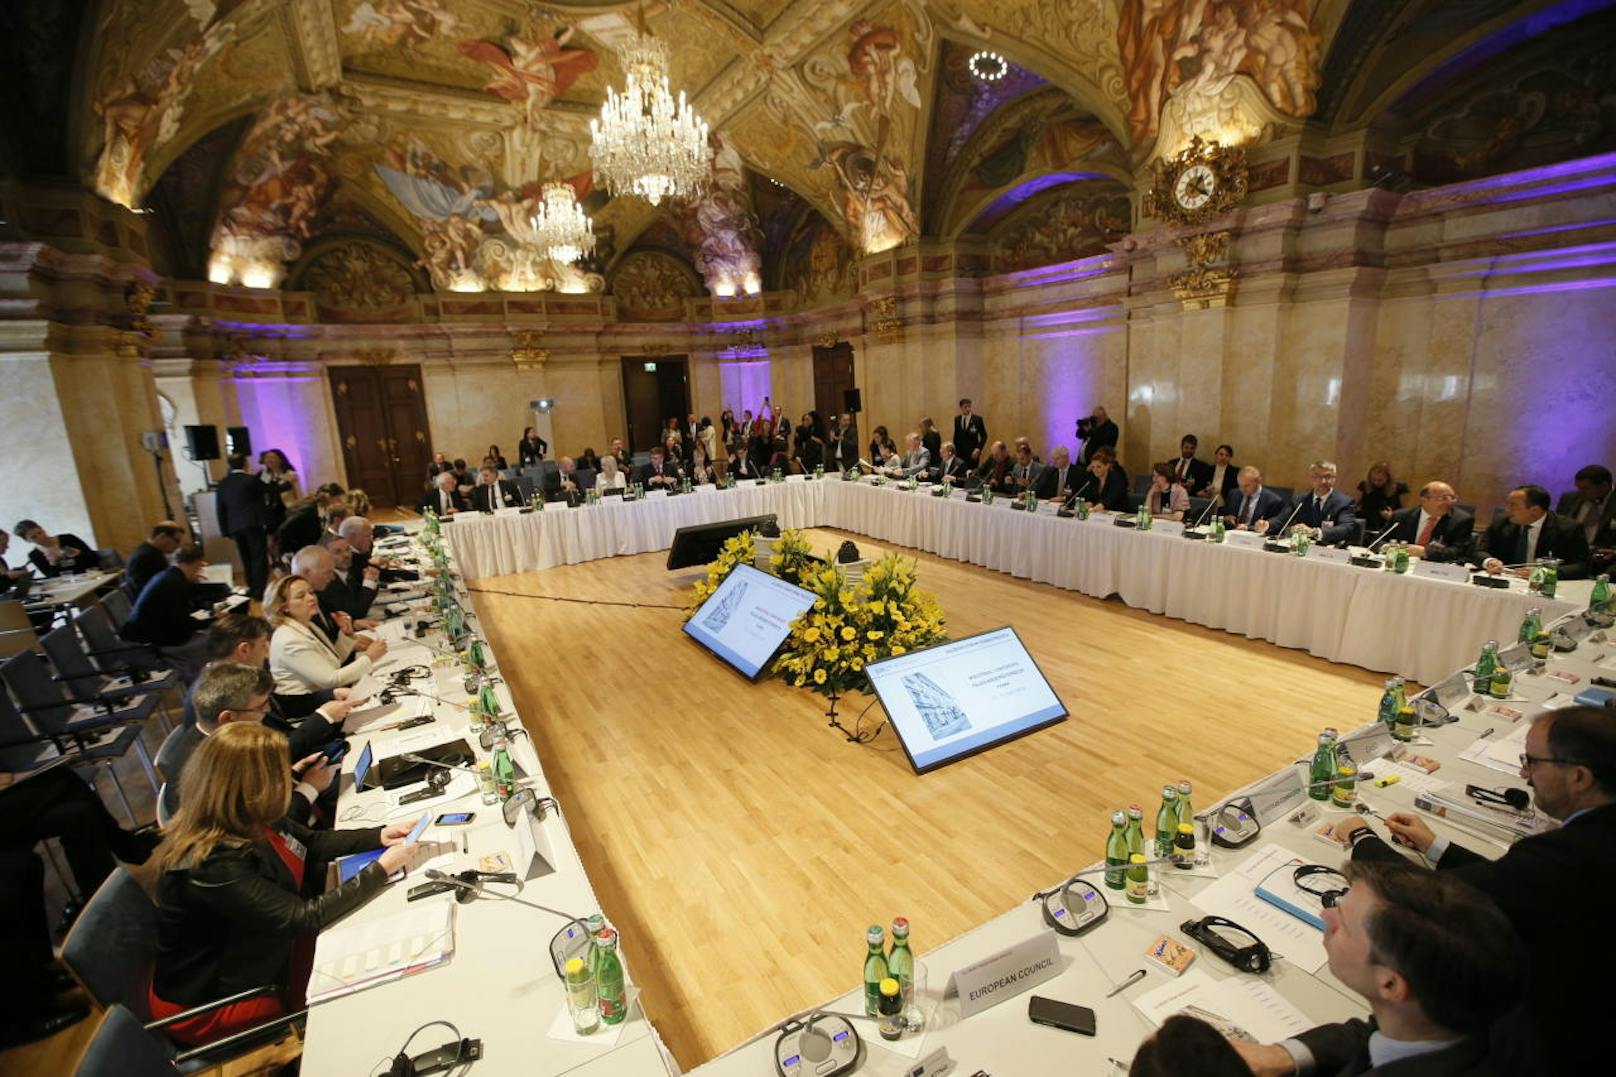 Insgesamt nehmen (mit Österreich) sieben Minister, vier Vize-Minister bzw. Staatssekretäre und darüber hinaus eine ganze Reihe hochrangiger Vertreter an der Konferenz teil, 14 Staaten sind vertreten.